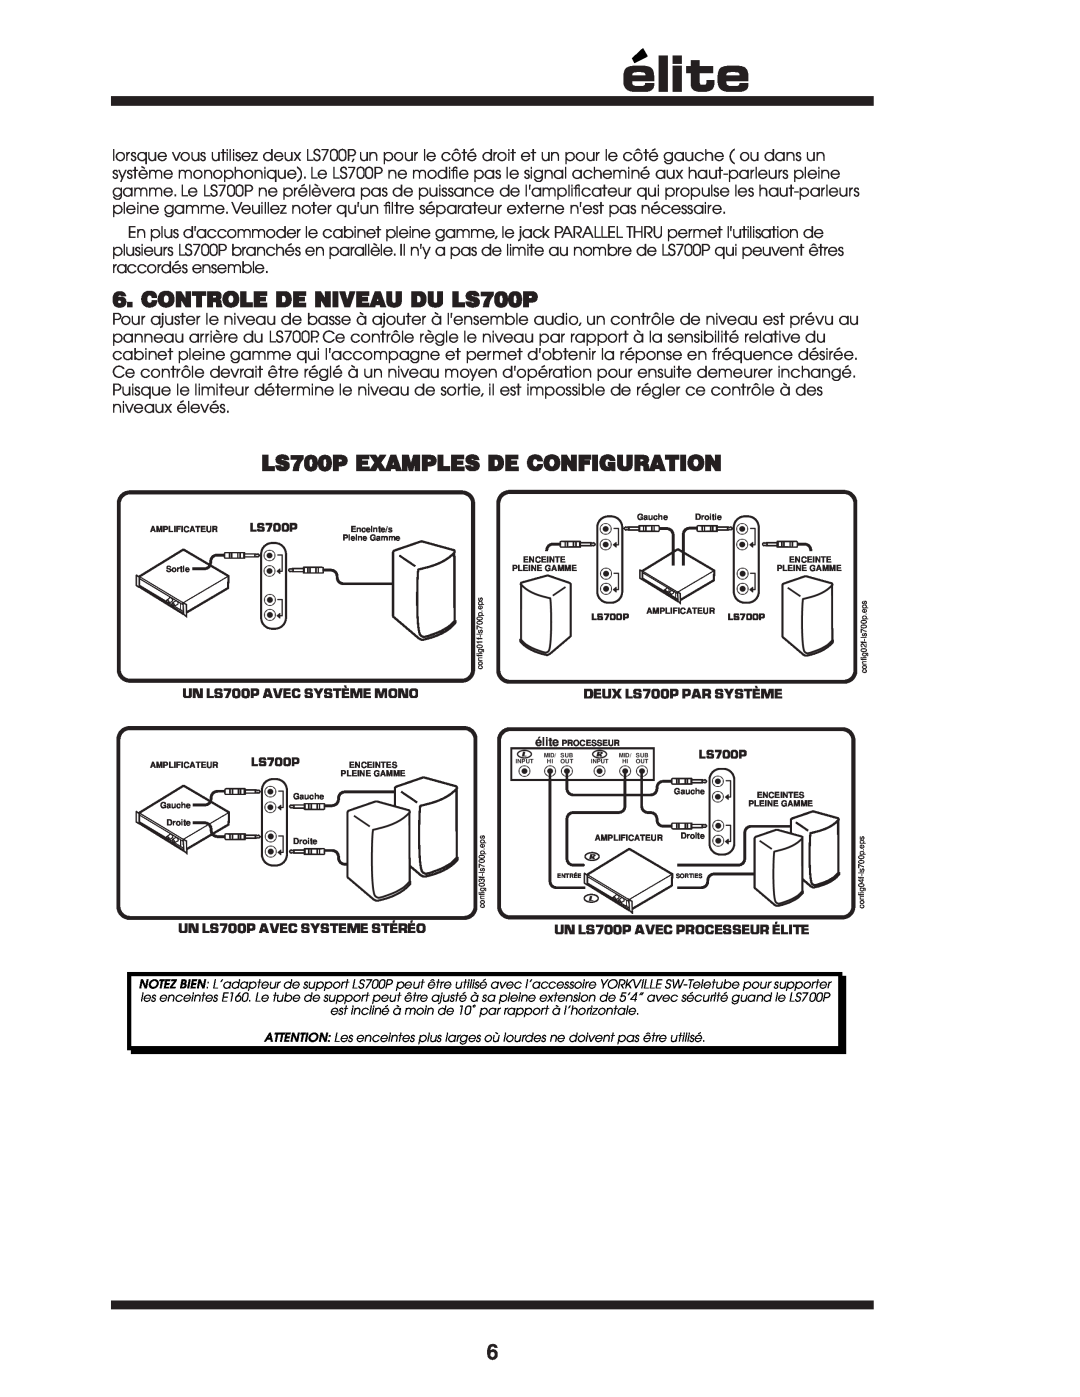 Yorkville Sound owner manual CONTROLE DE NIVEAU DU LS700P, LS700P EXAMPLES DE CONFIGURATION, UN LS700P AVEC SYSTÈME MONO 